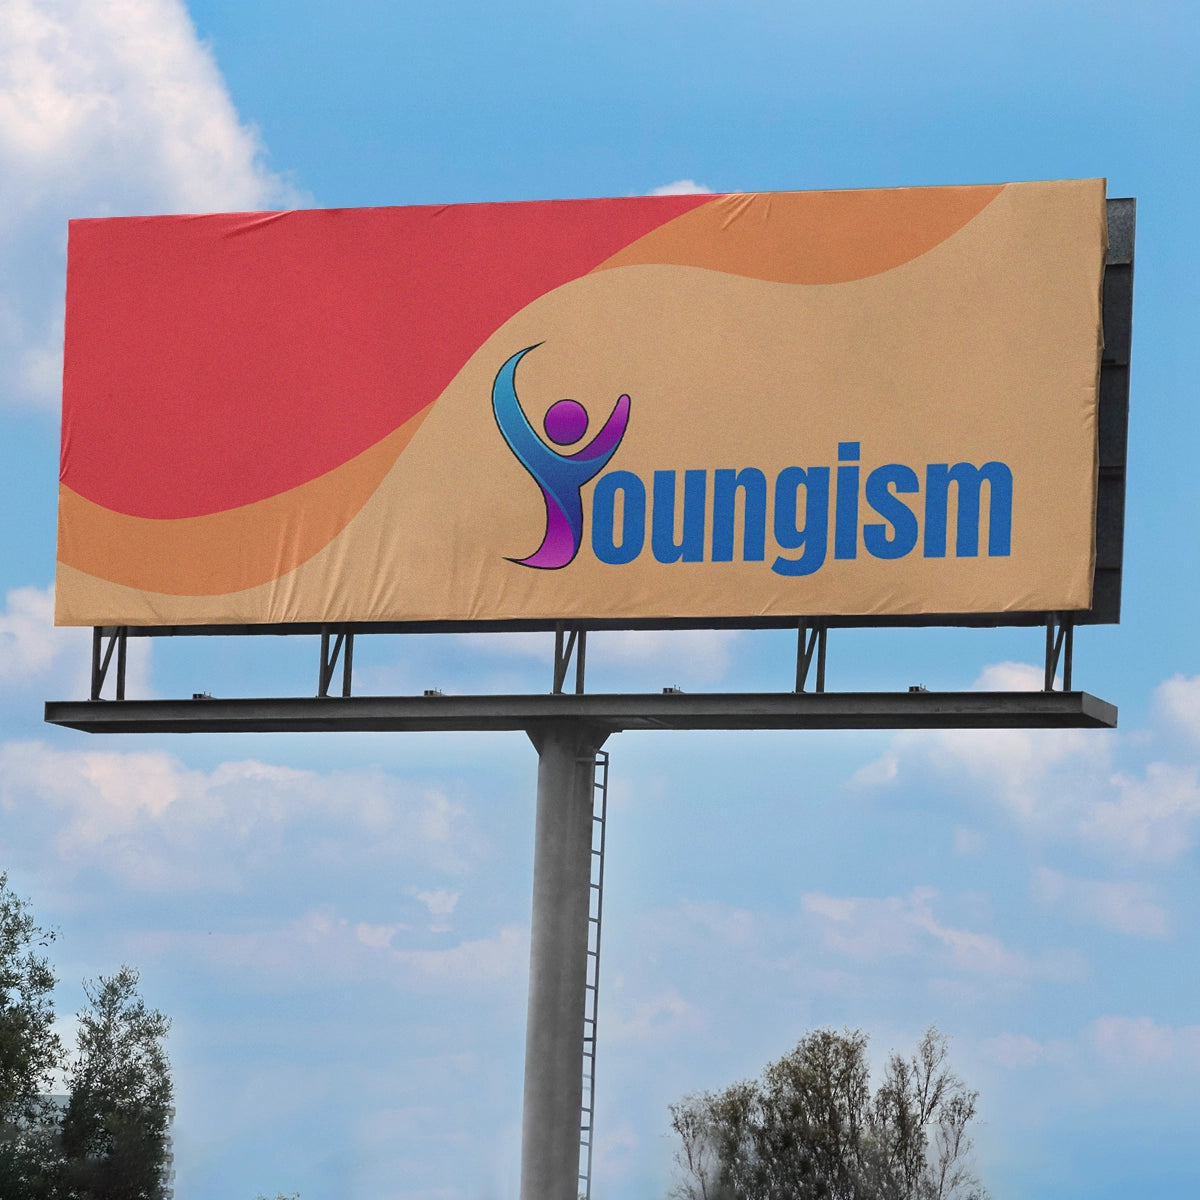 youngism.com